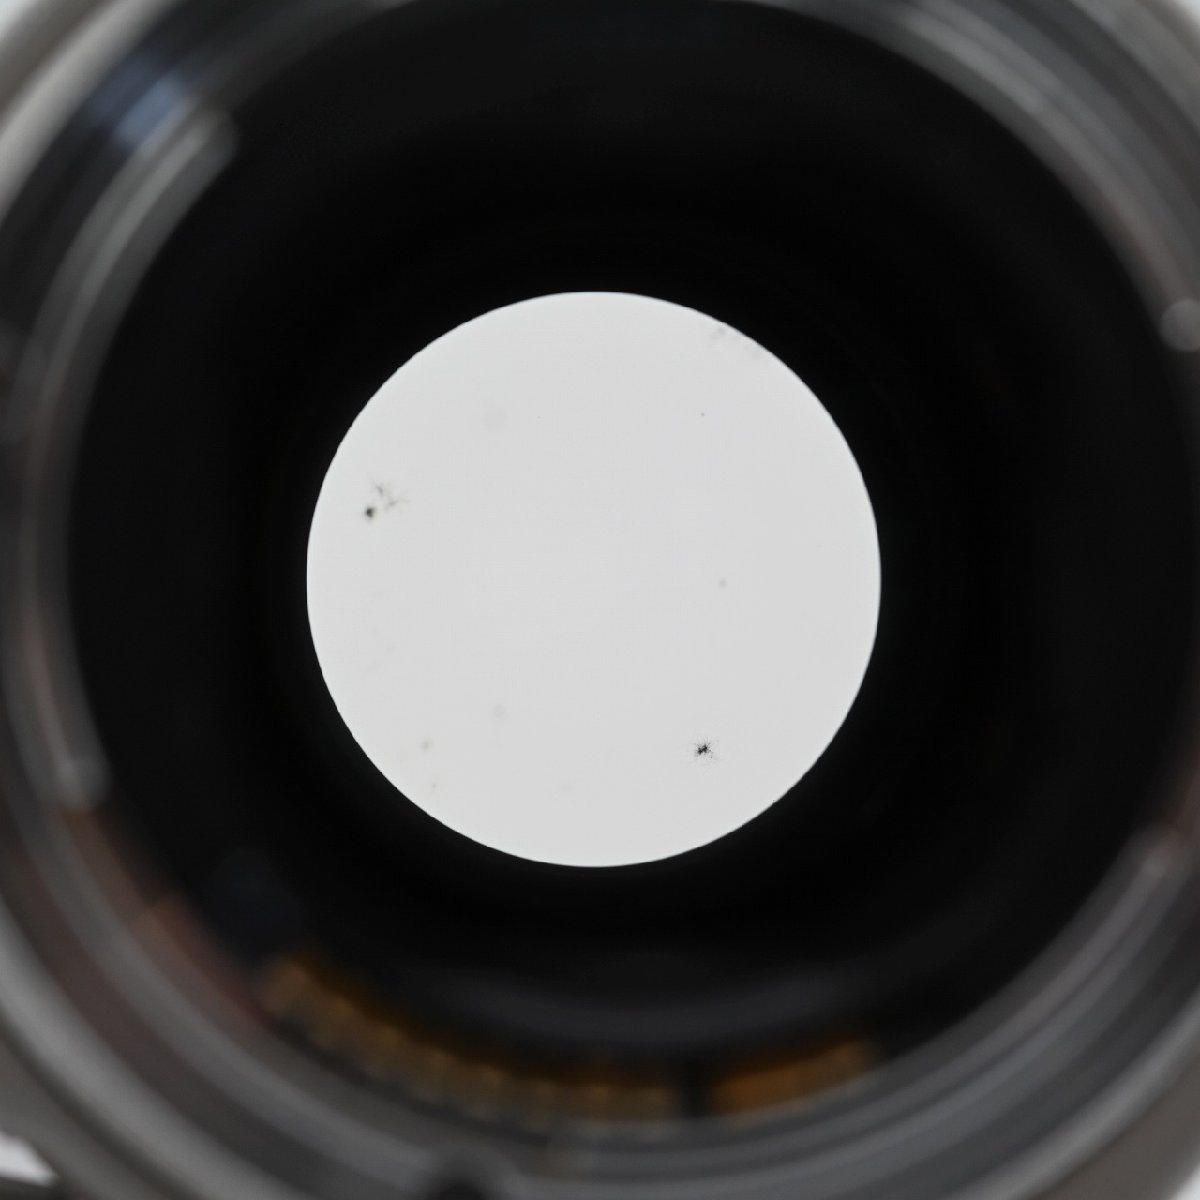 Canon 望遠ズームレンズ EF70-200mm F2.8L USM フルサイズ対応 交換レンズ_画像10